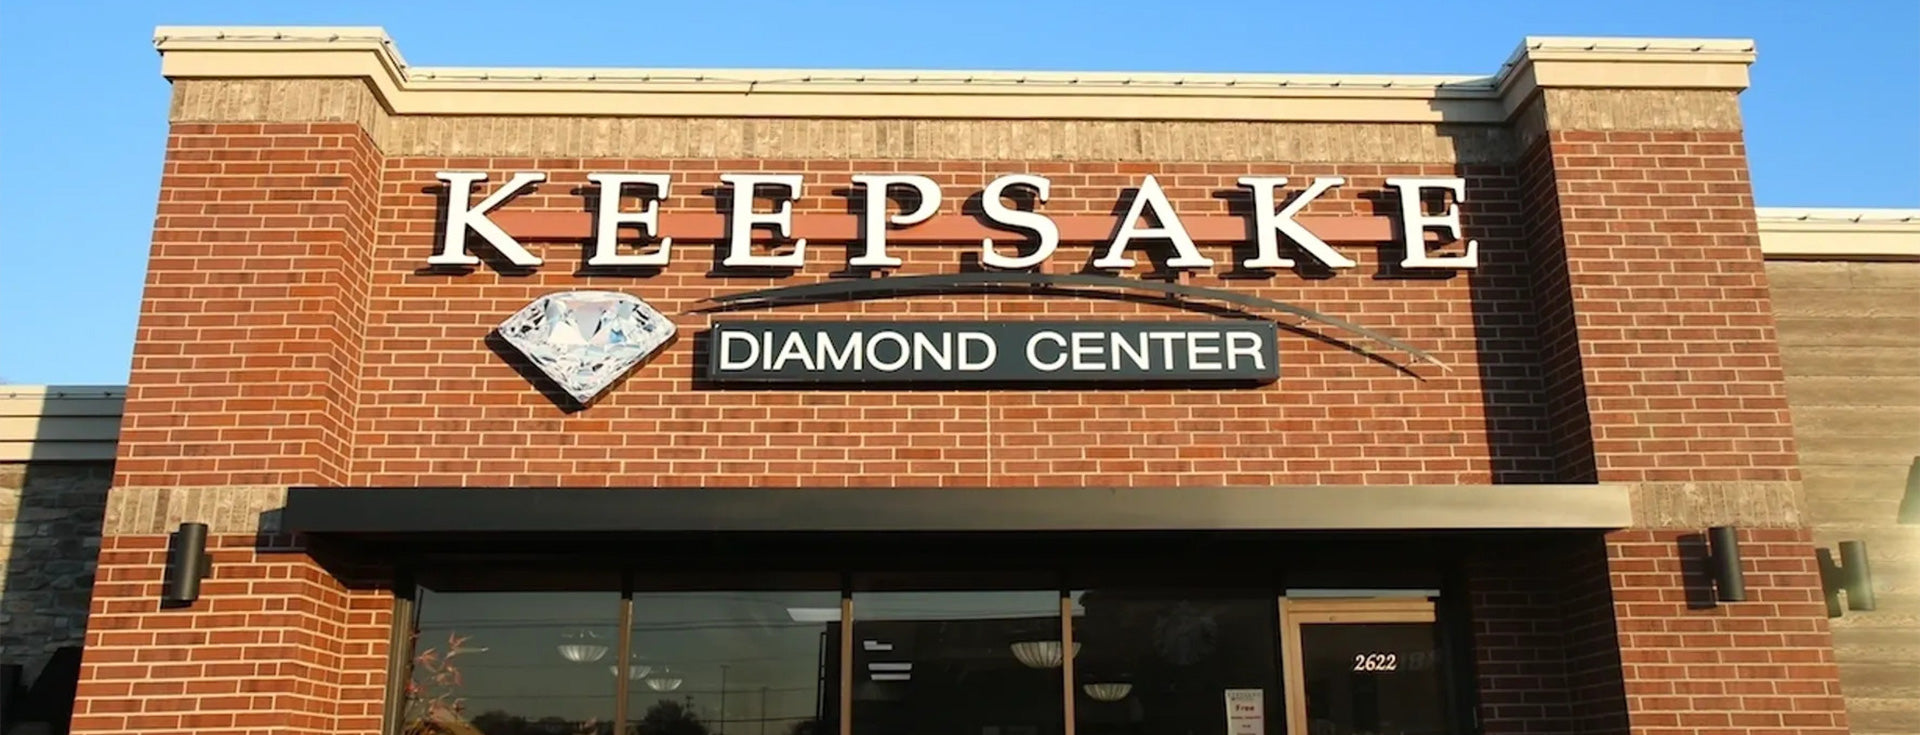 Keepsake Diamond Center Store